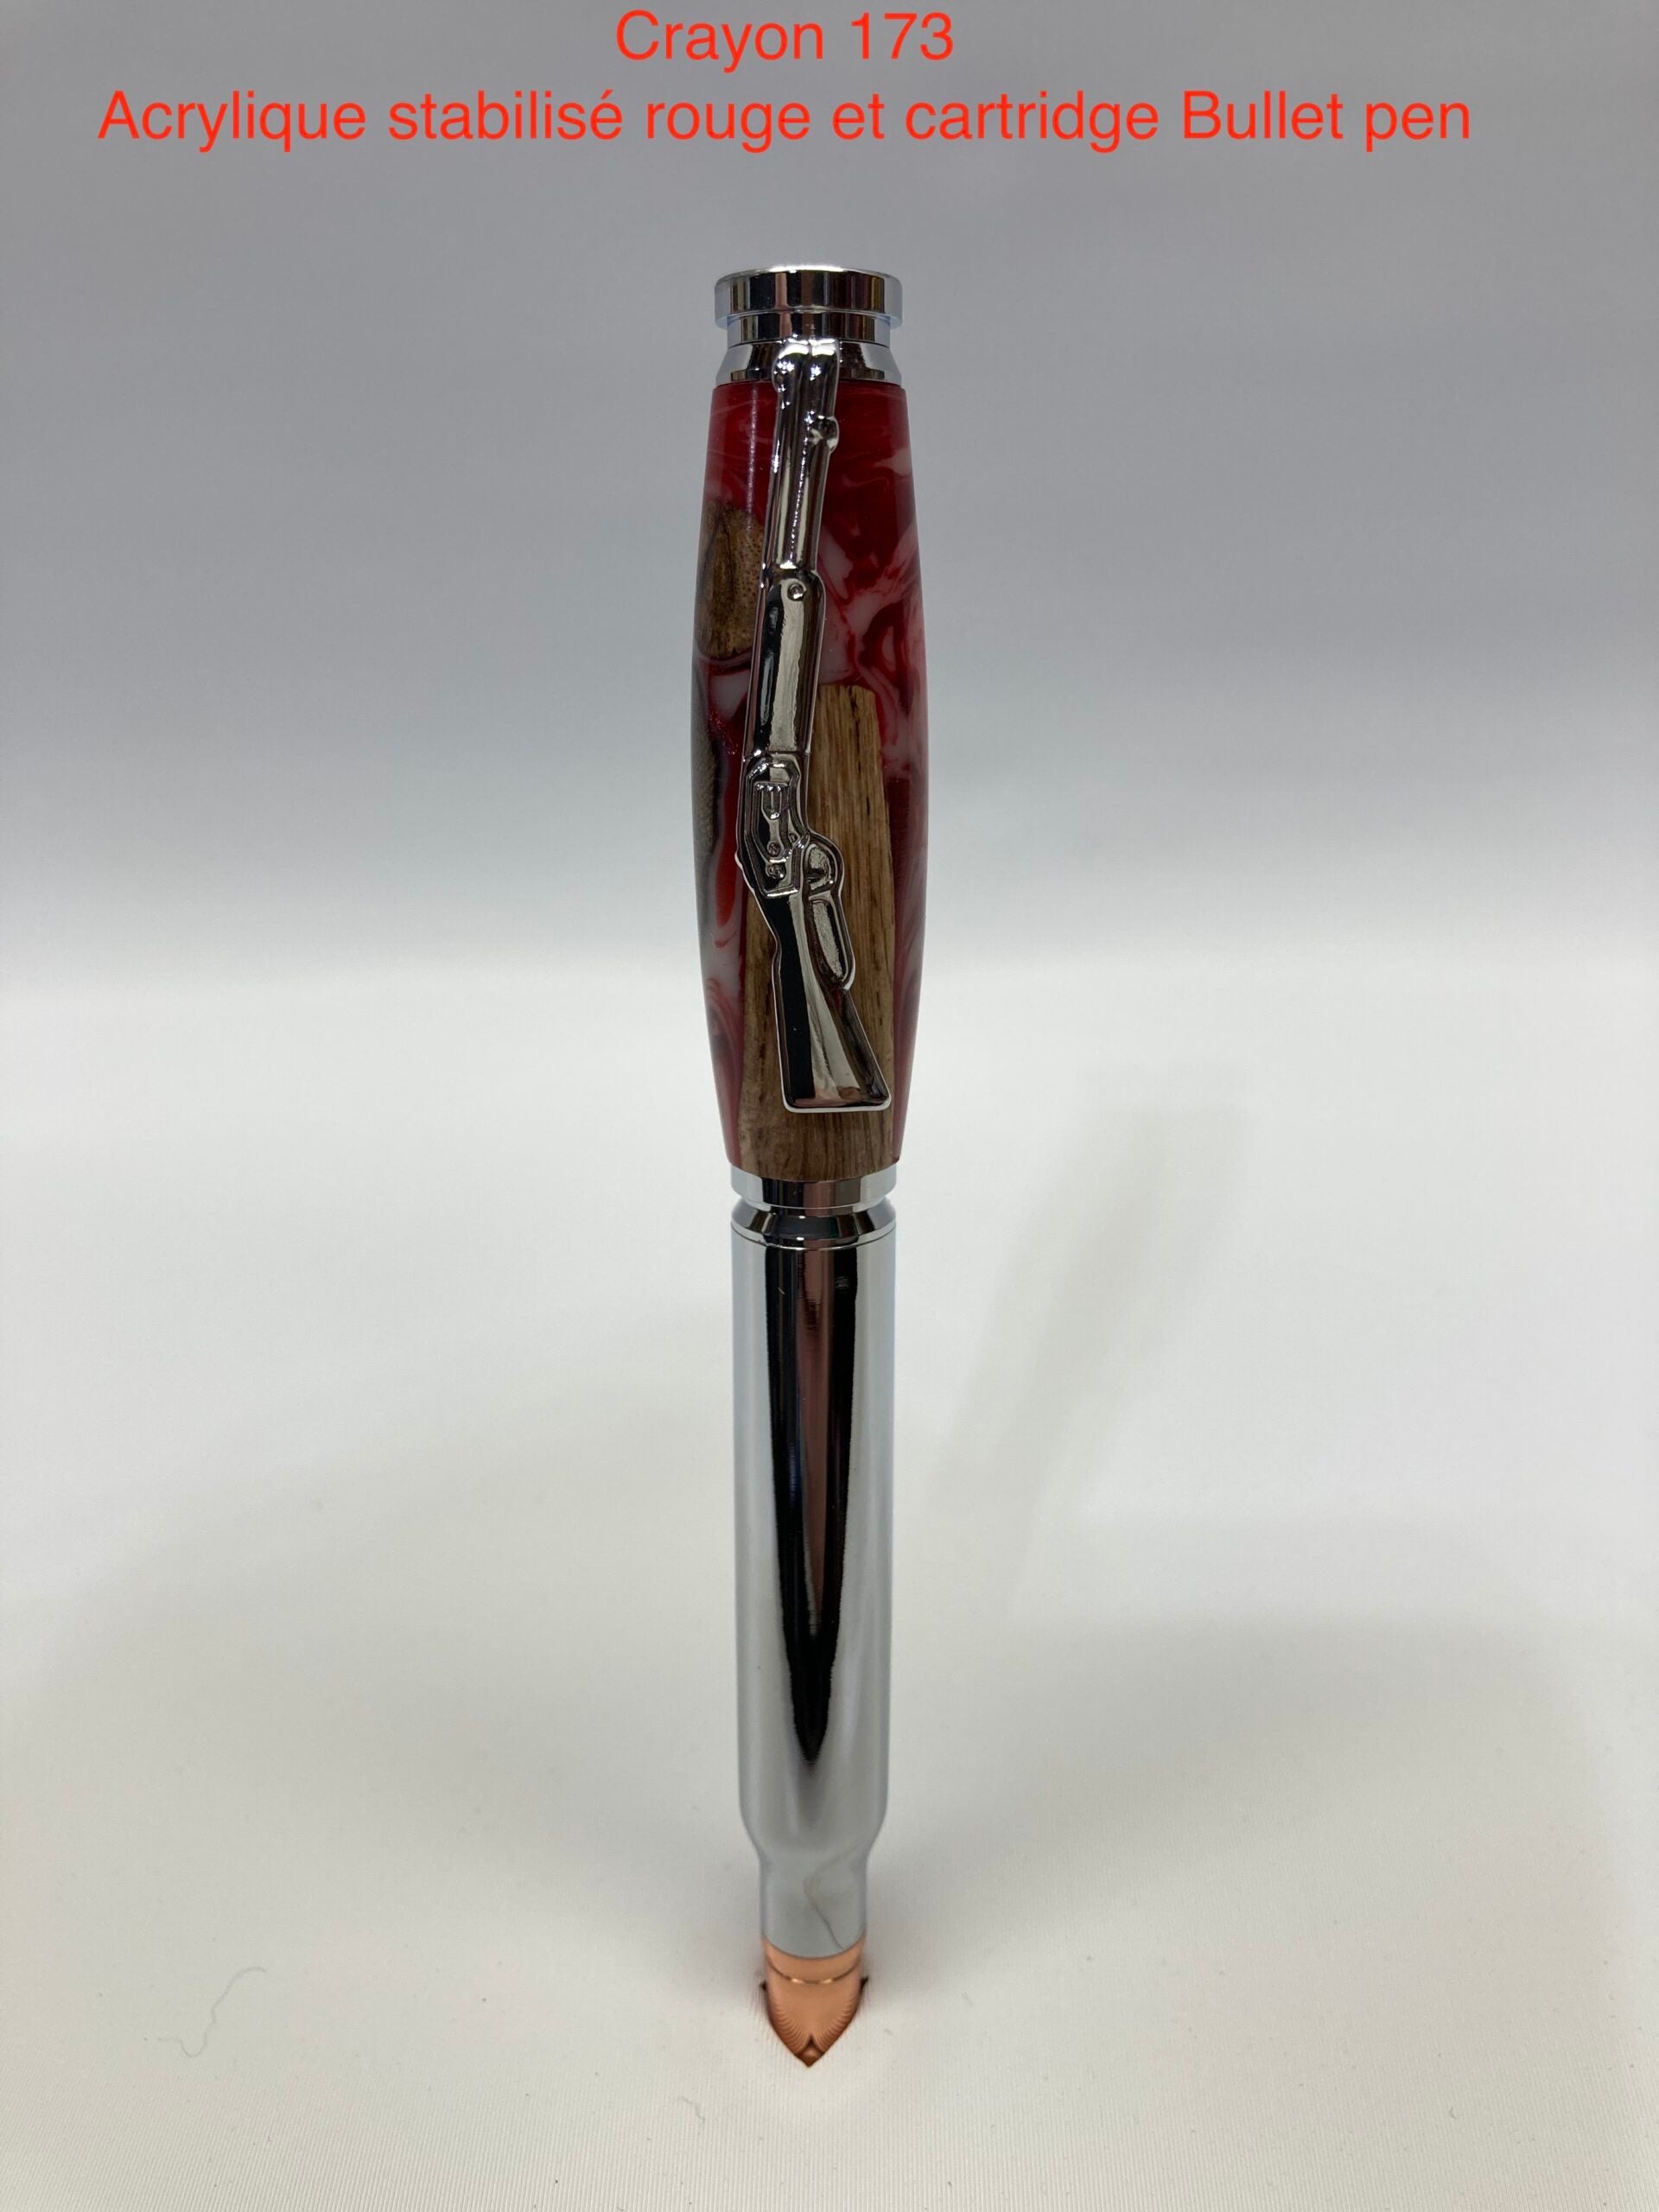 Chasse carthridge bullet, acrylique stabilisé rouge